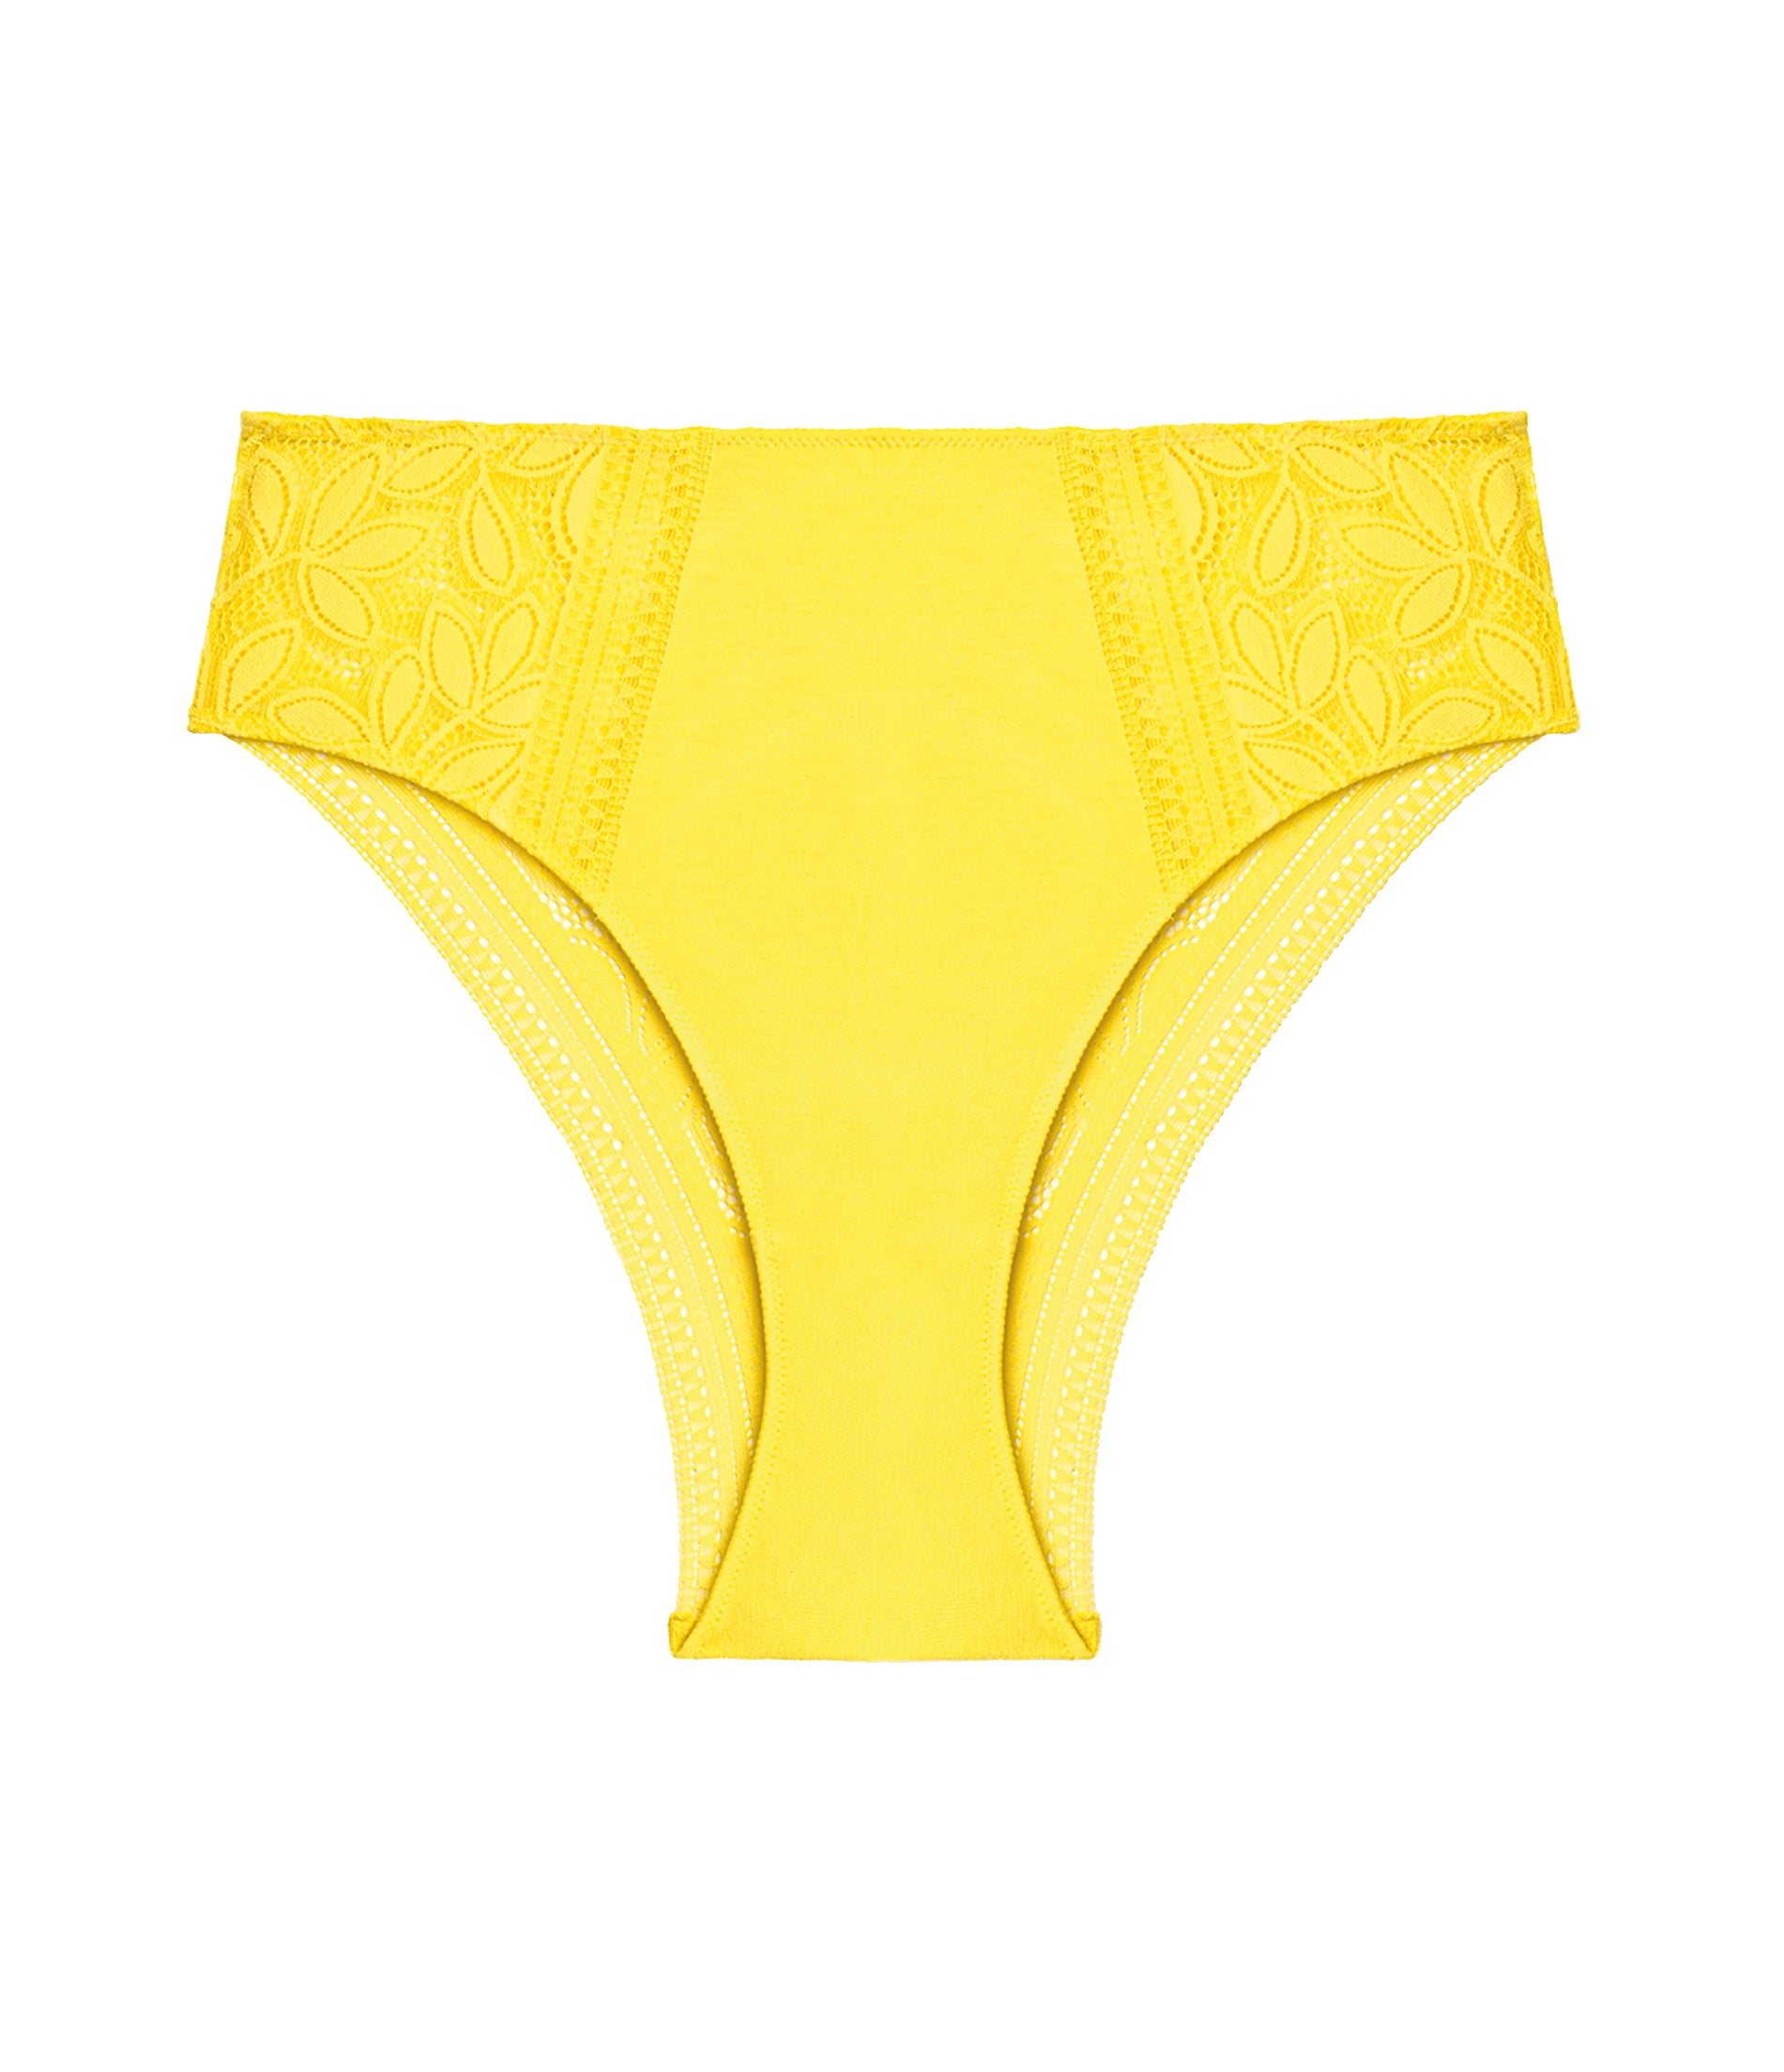 Culotte taille haute femme dentelle jaune Lynn – Leel lingerie